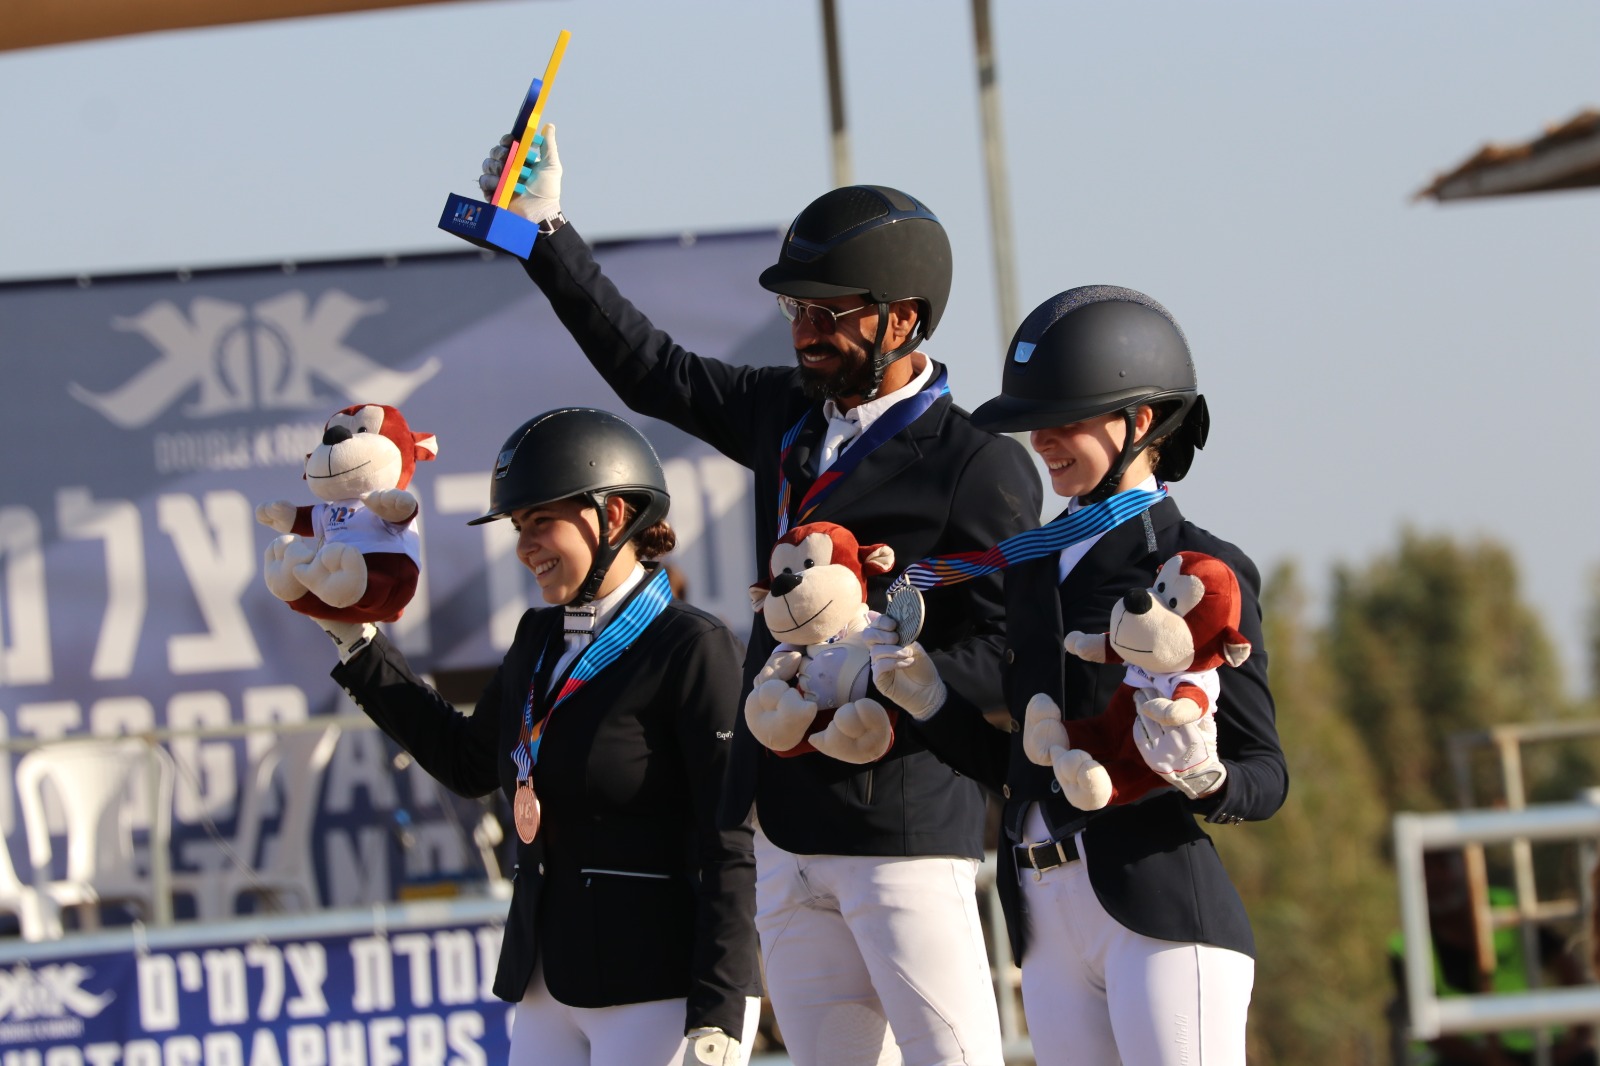 The Games - Equestrian, Finals, Sarona, July 21st Equestrian